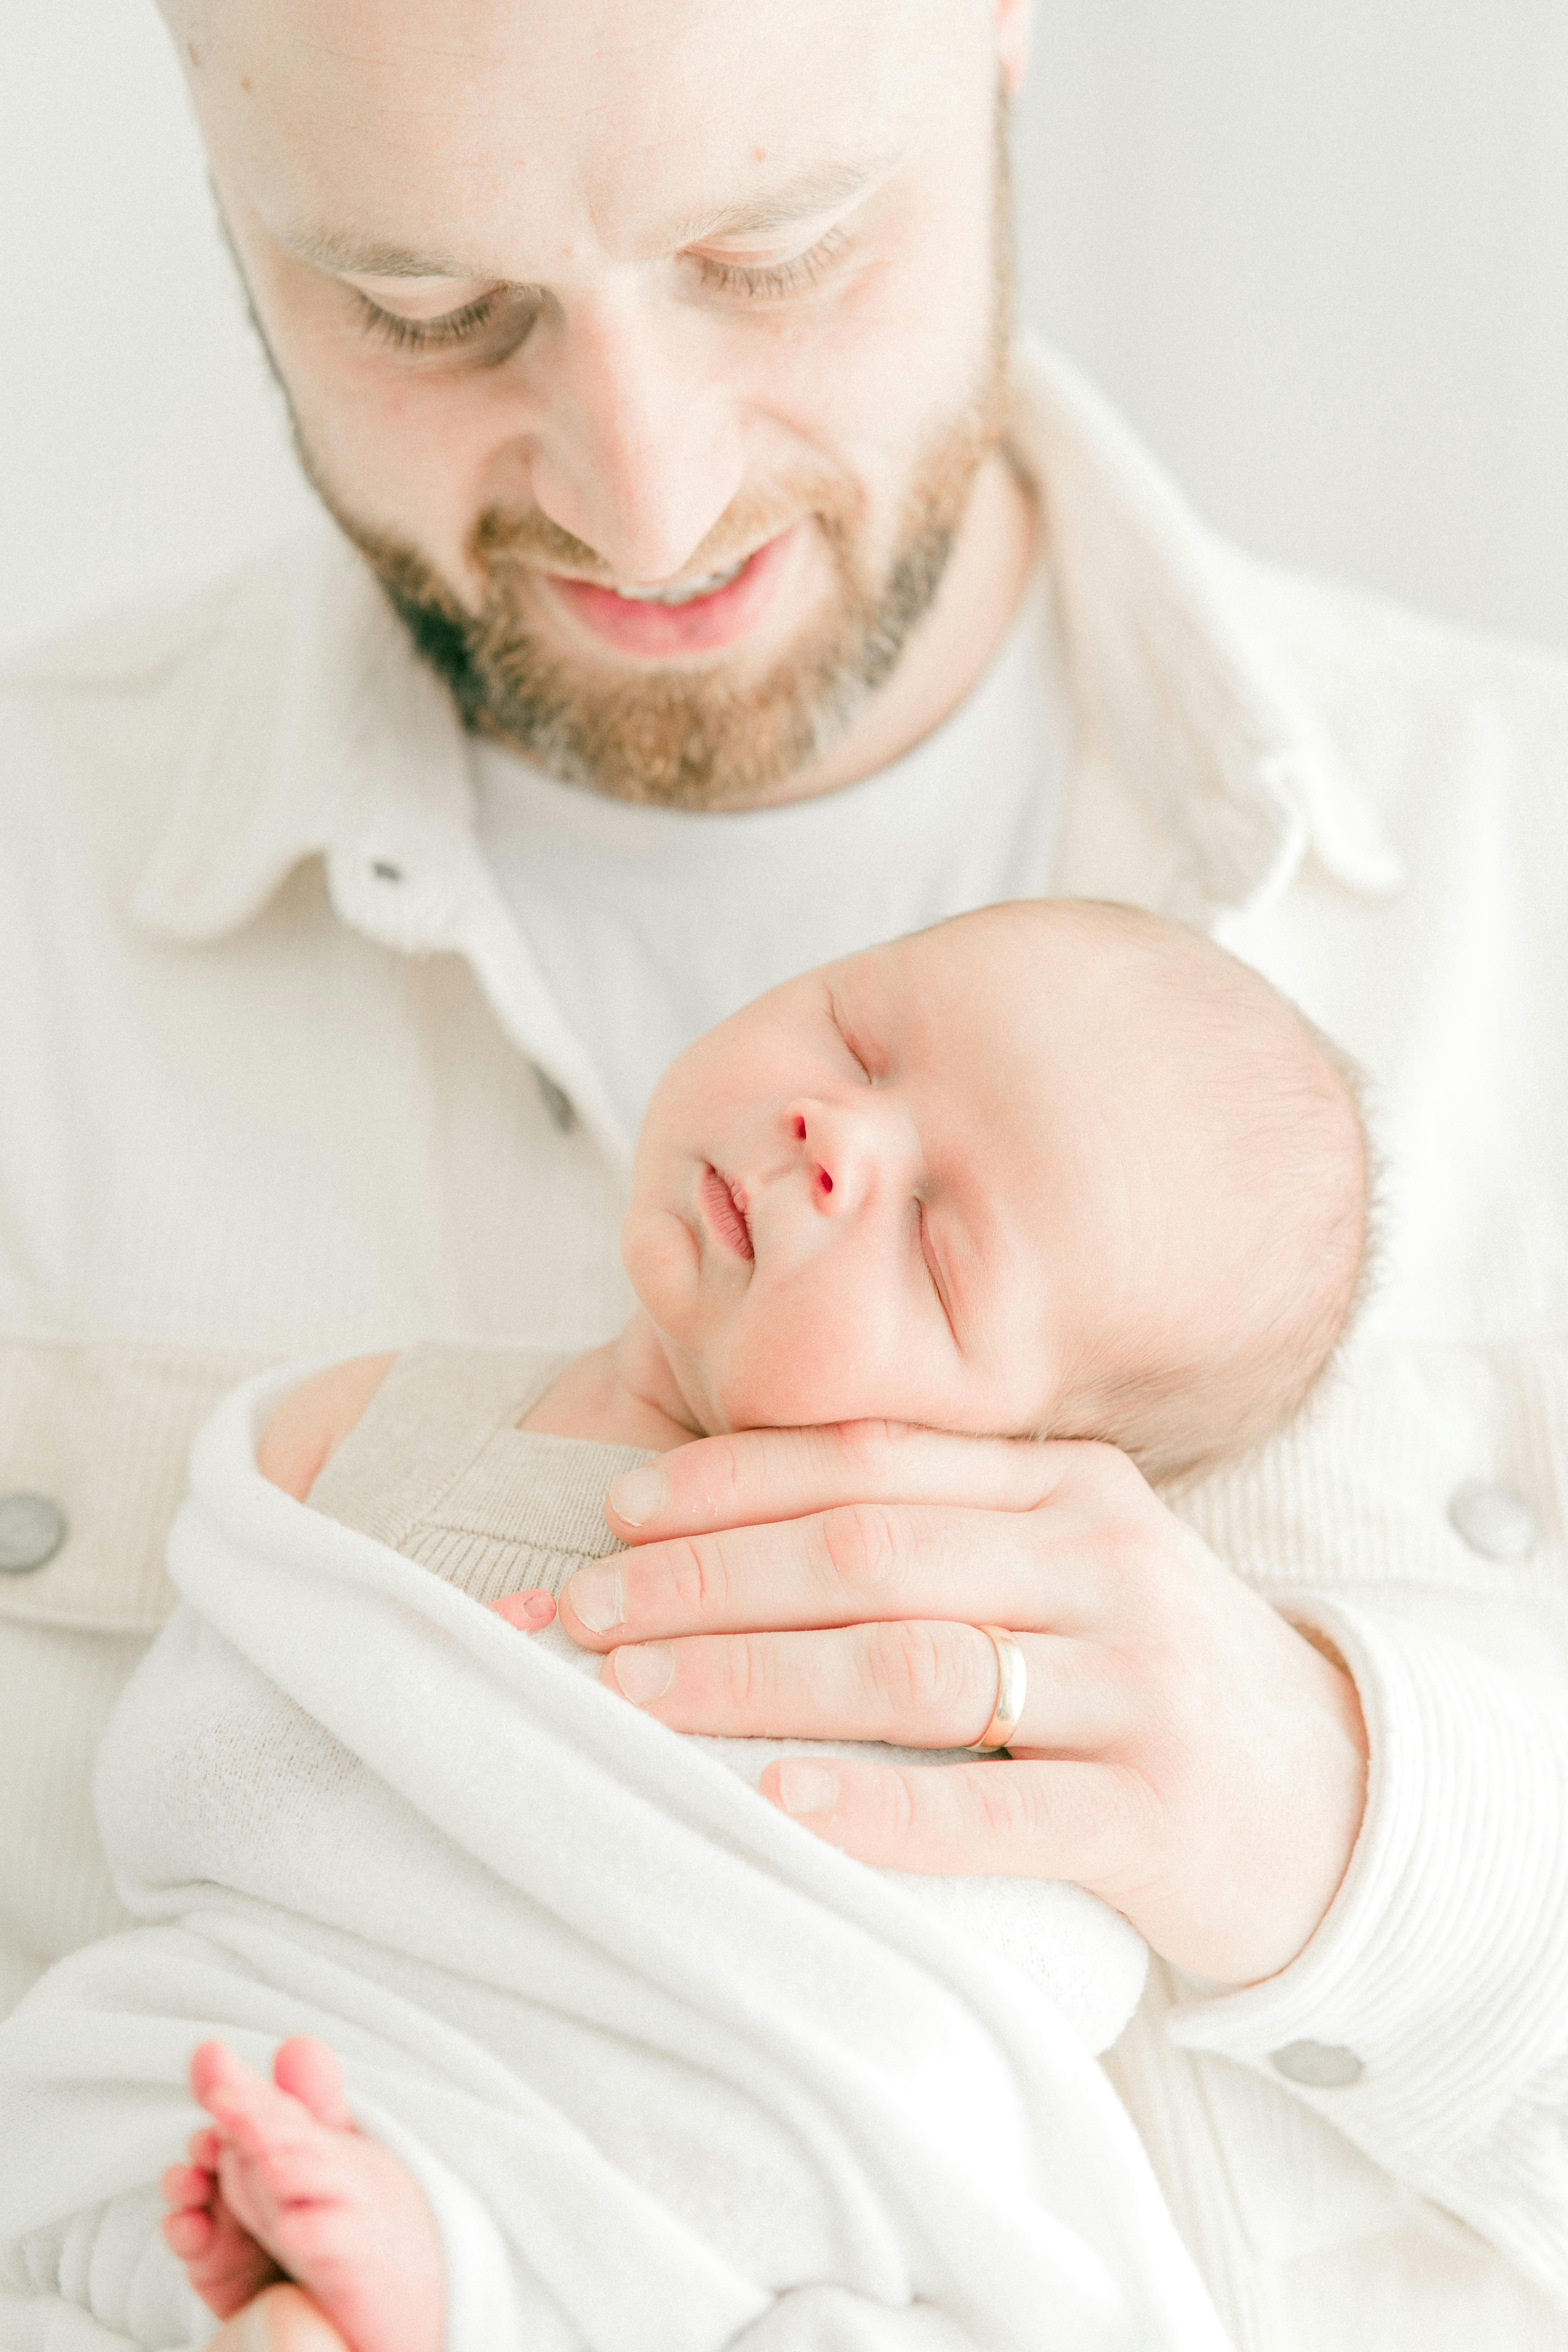 Ein neugeborenes Baby, gehalten von einem glücklichen Vater | Quelle: Pexels